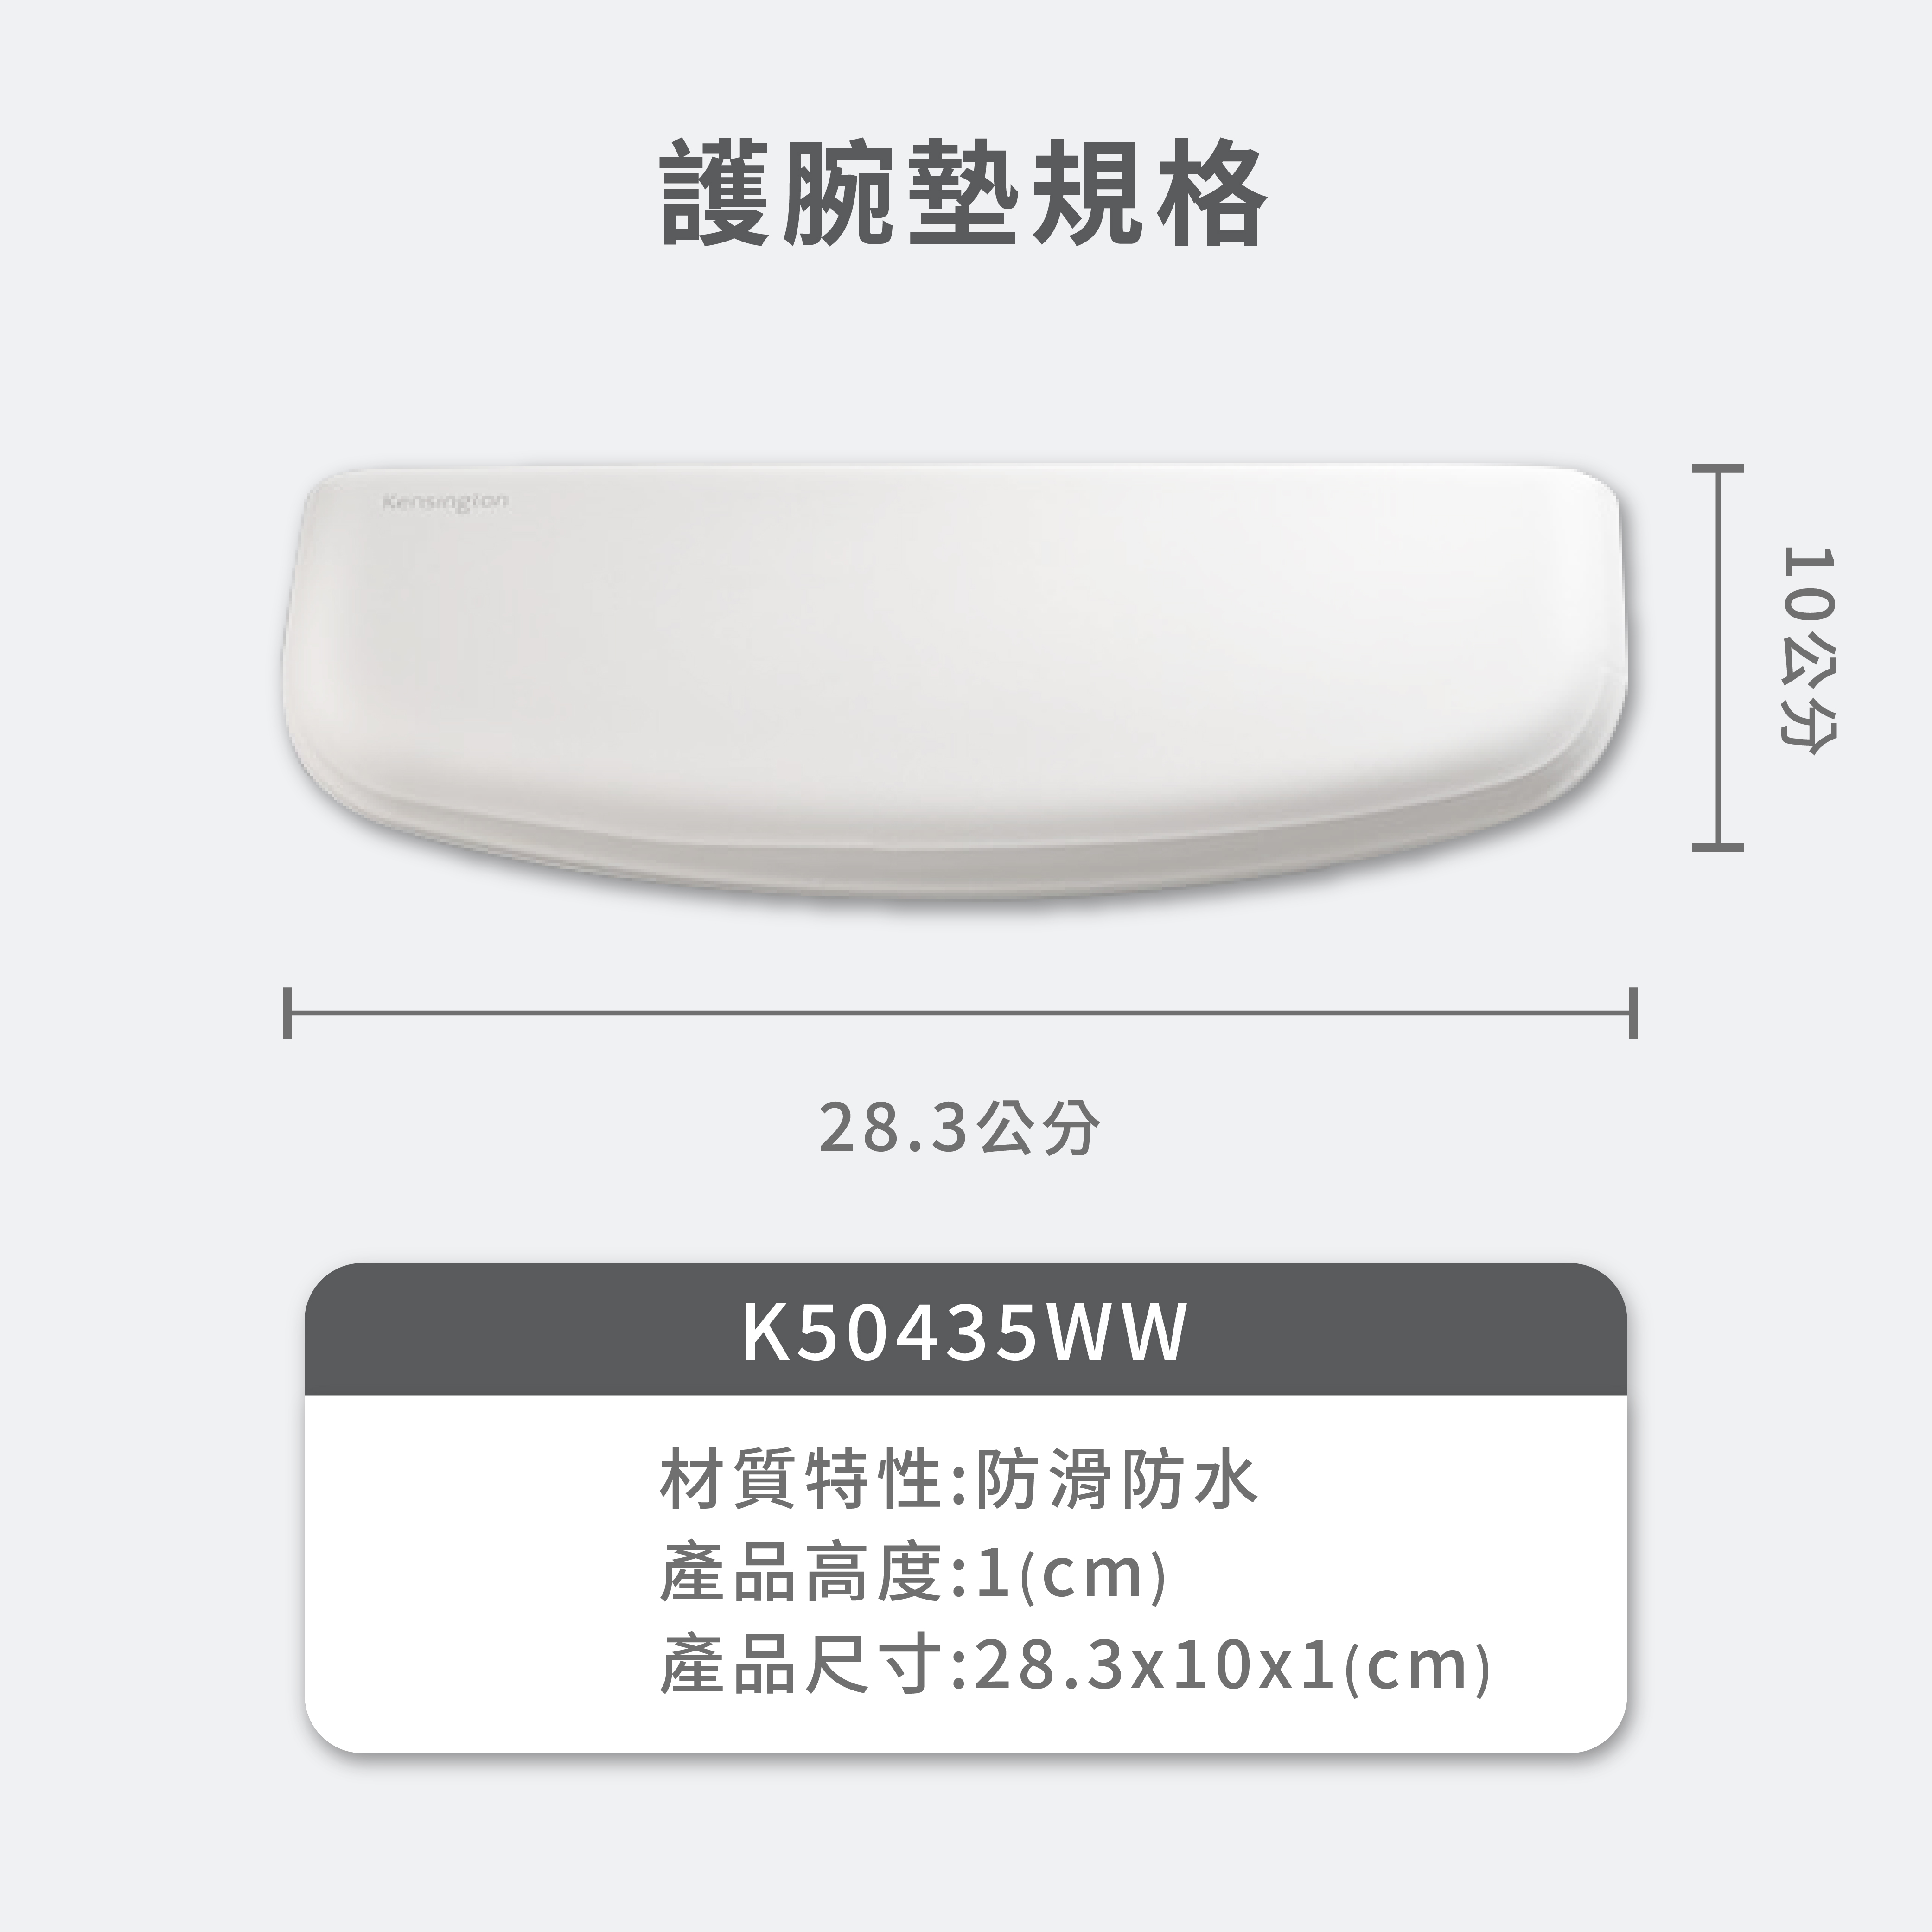 K50435WW-6